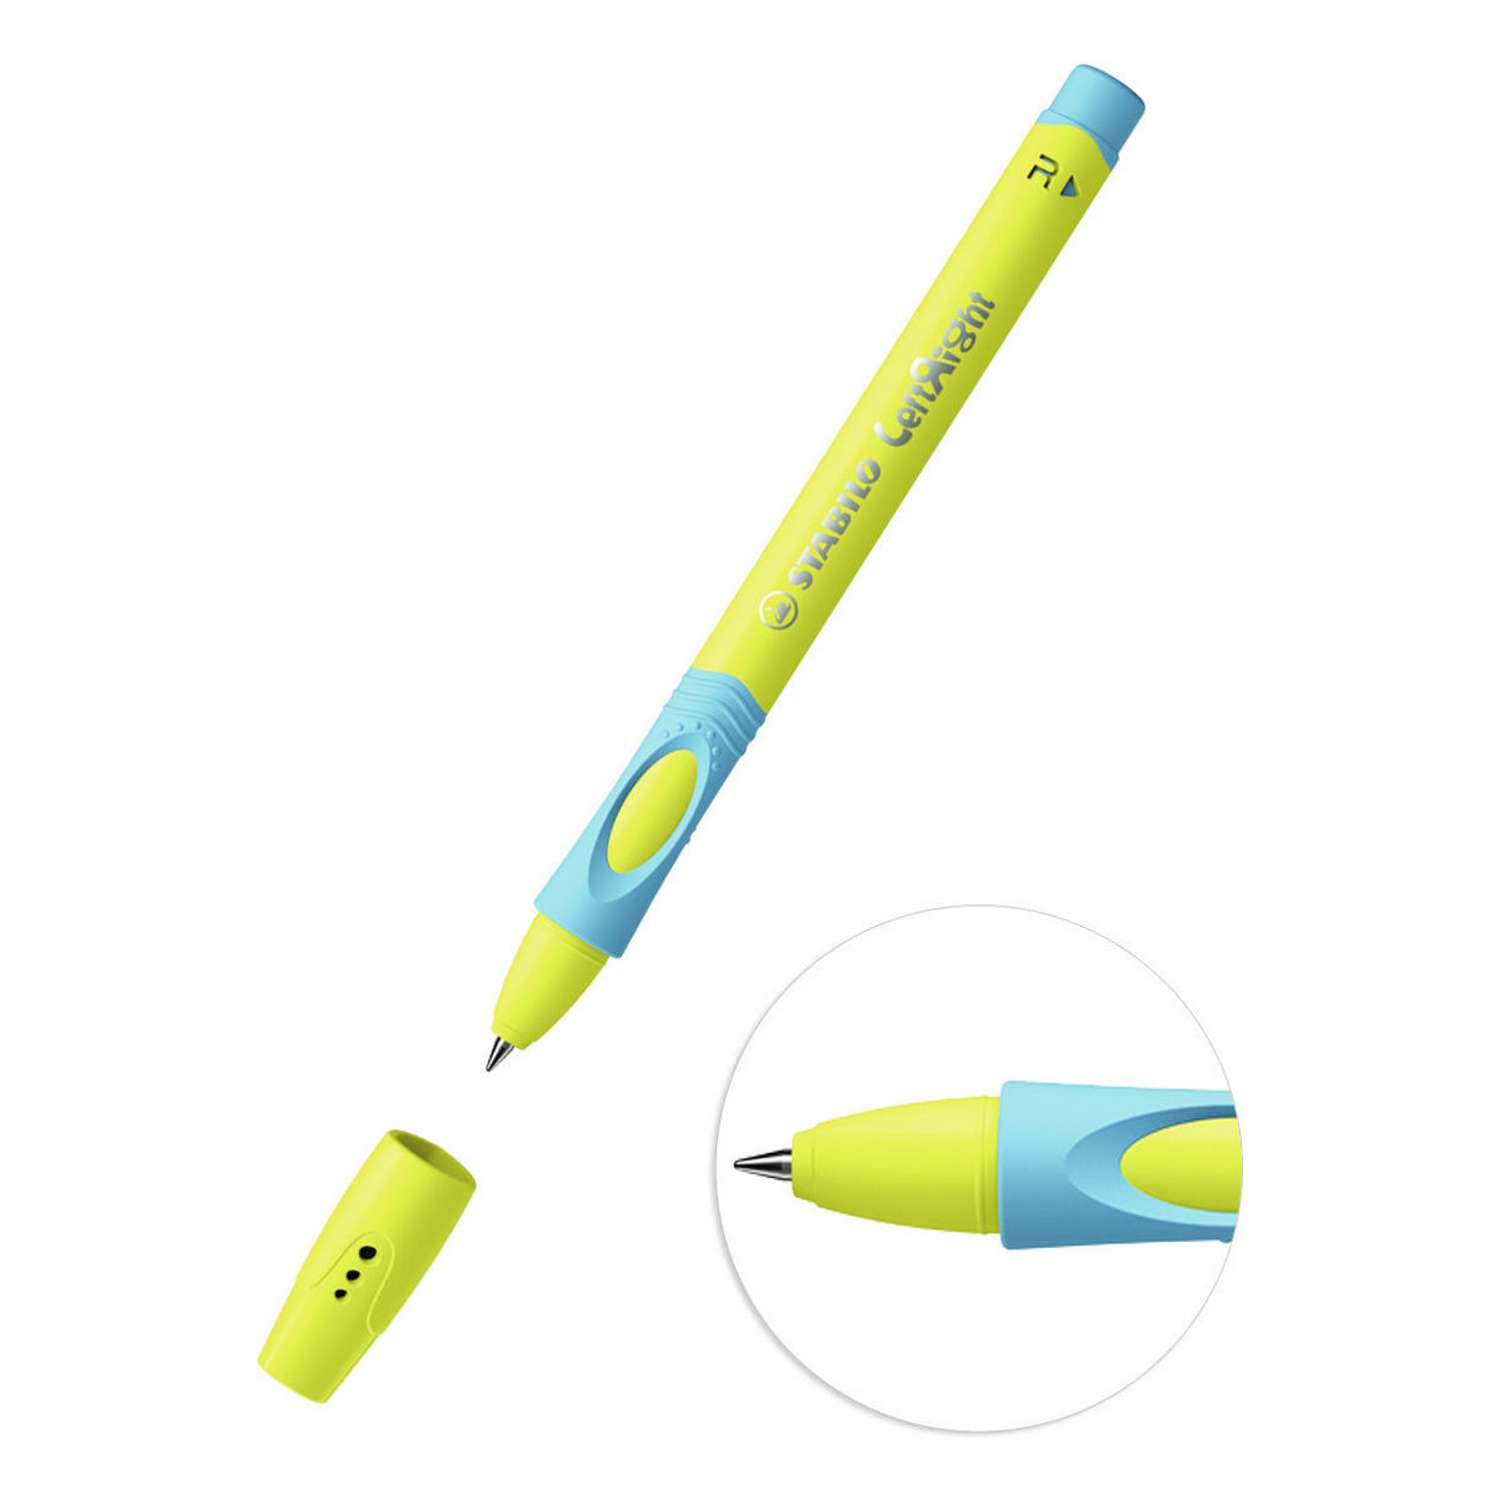 Ручка шариковая масляная STABILO LeftRight для правшей для обучения письму F синяя / корпус жёлто-голубой 2шт в блистере - фото 3